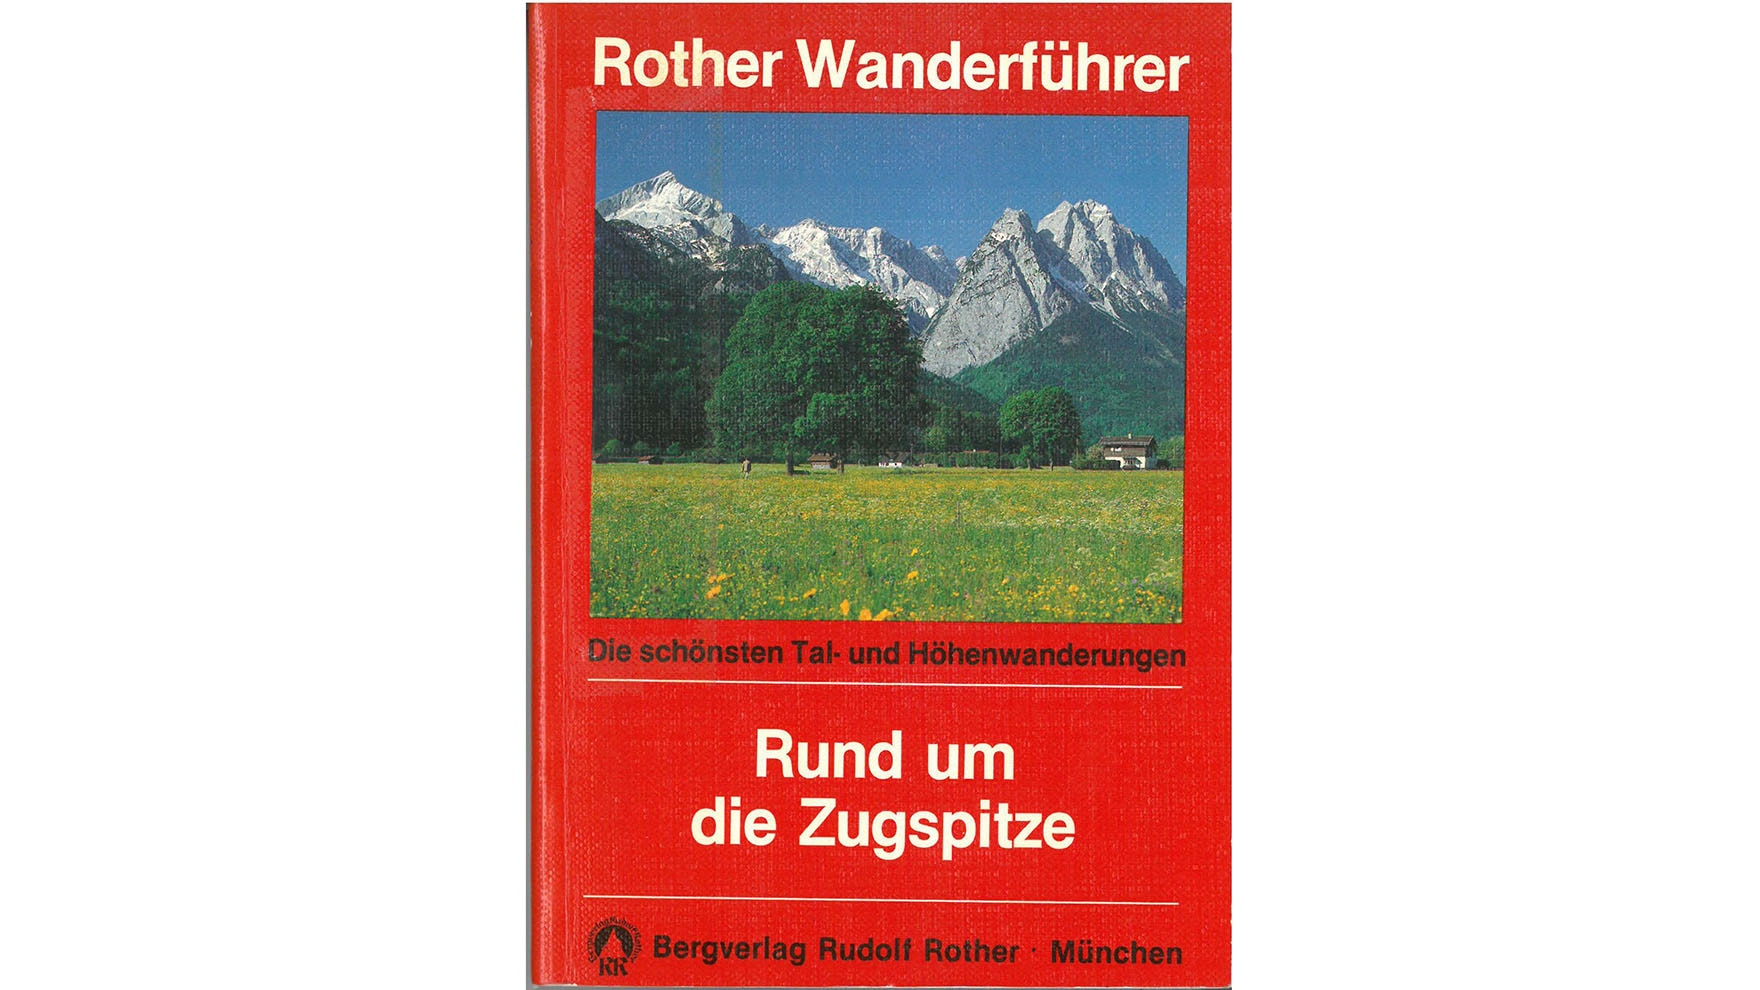 Der erste Rother Wanderführer erscheint im Jahr 1985: Rund um die Zugspitze.